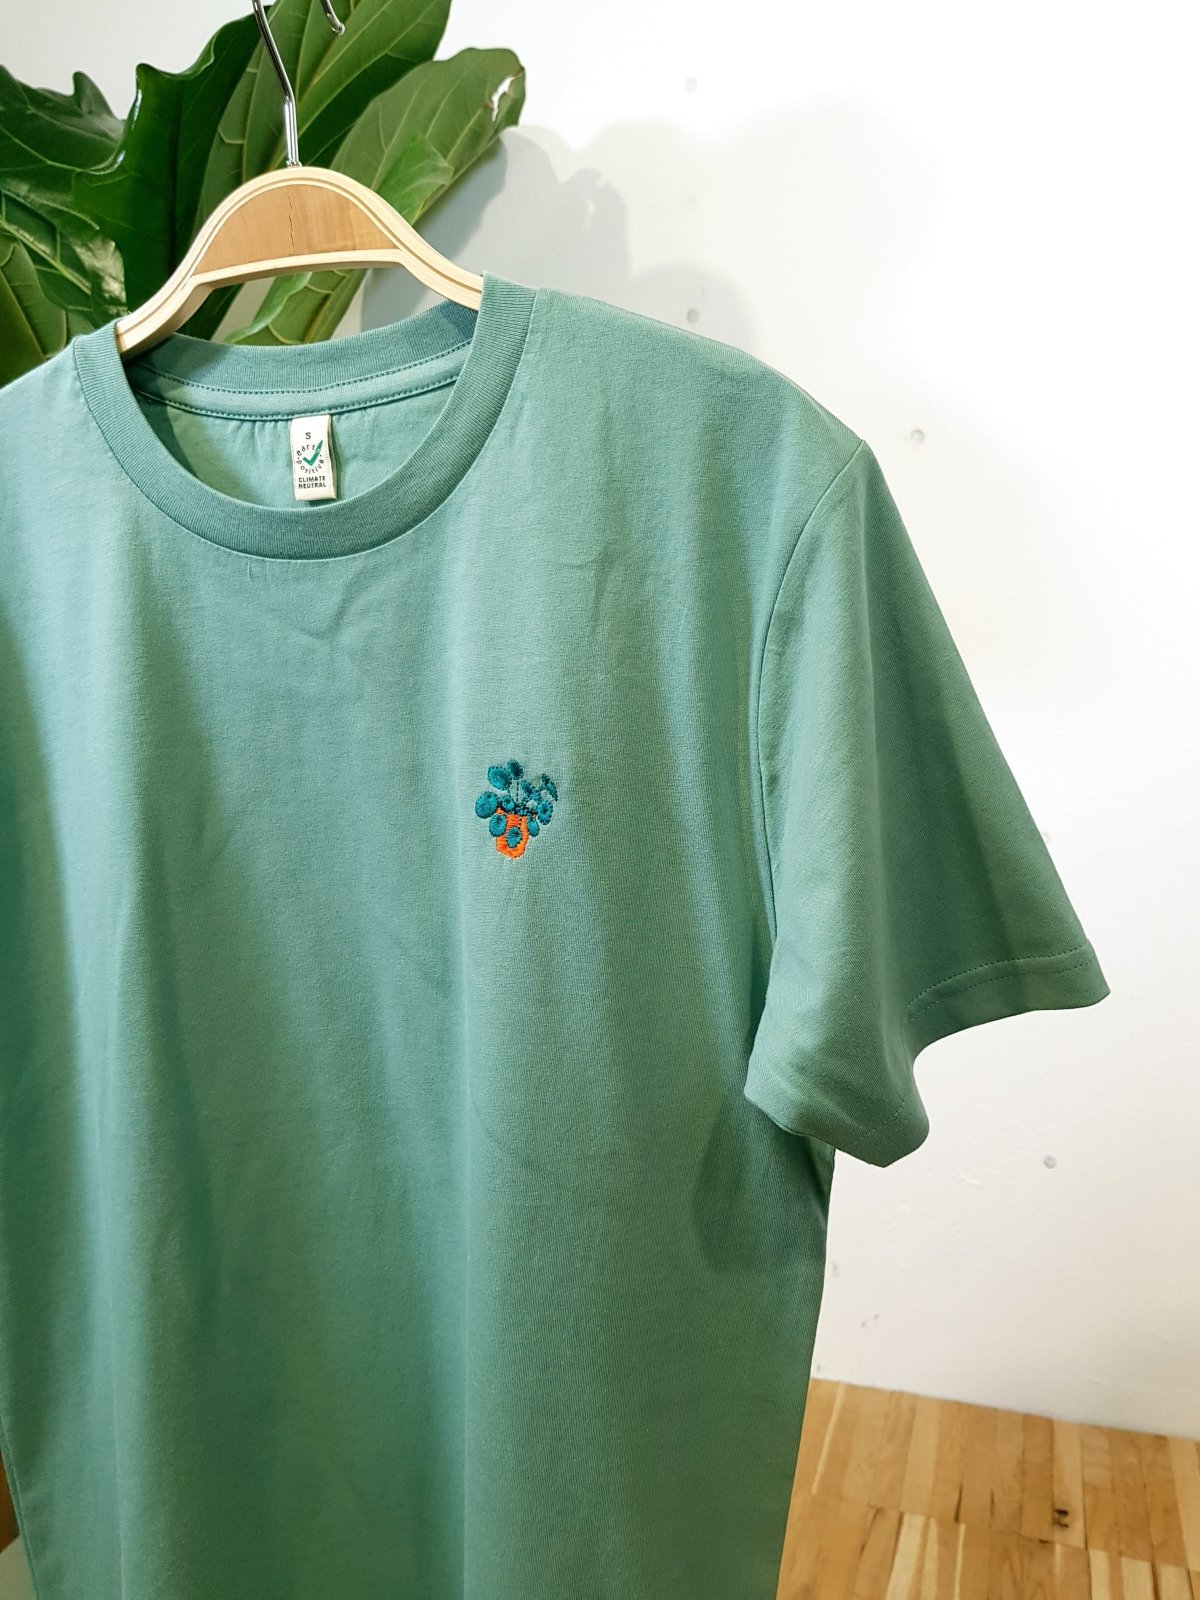 pannenkoekplant sage green unisex organic t-shirt te koop in de webshop van Almost Summer Amsterdam